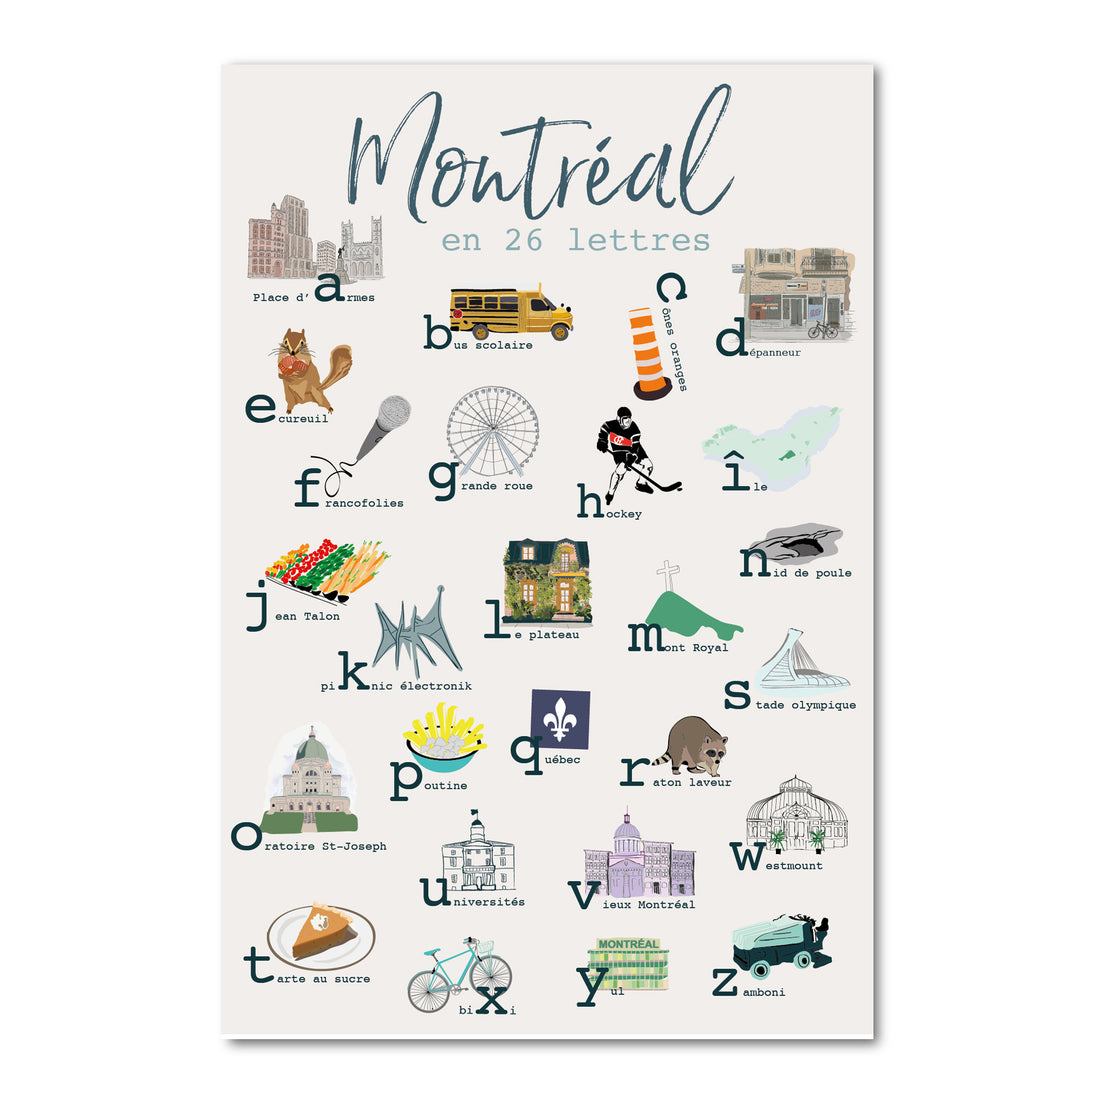 Montréal en 26 lettres revisitée